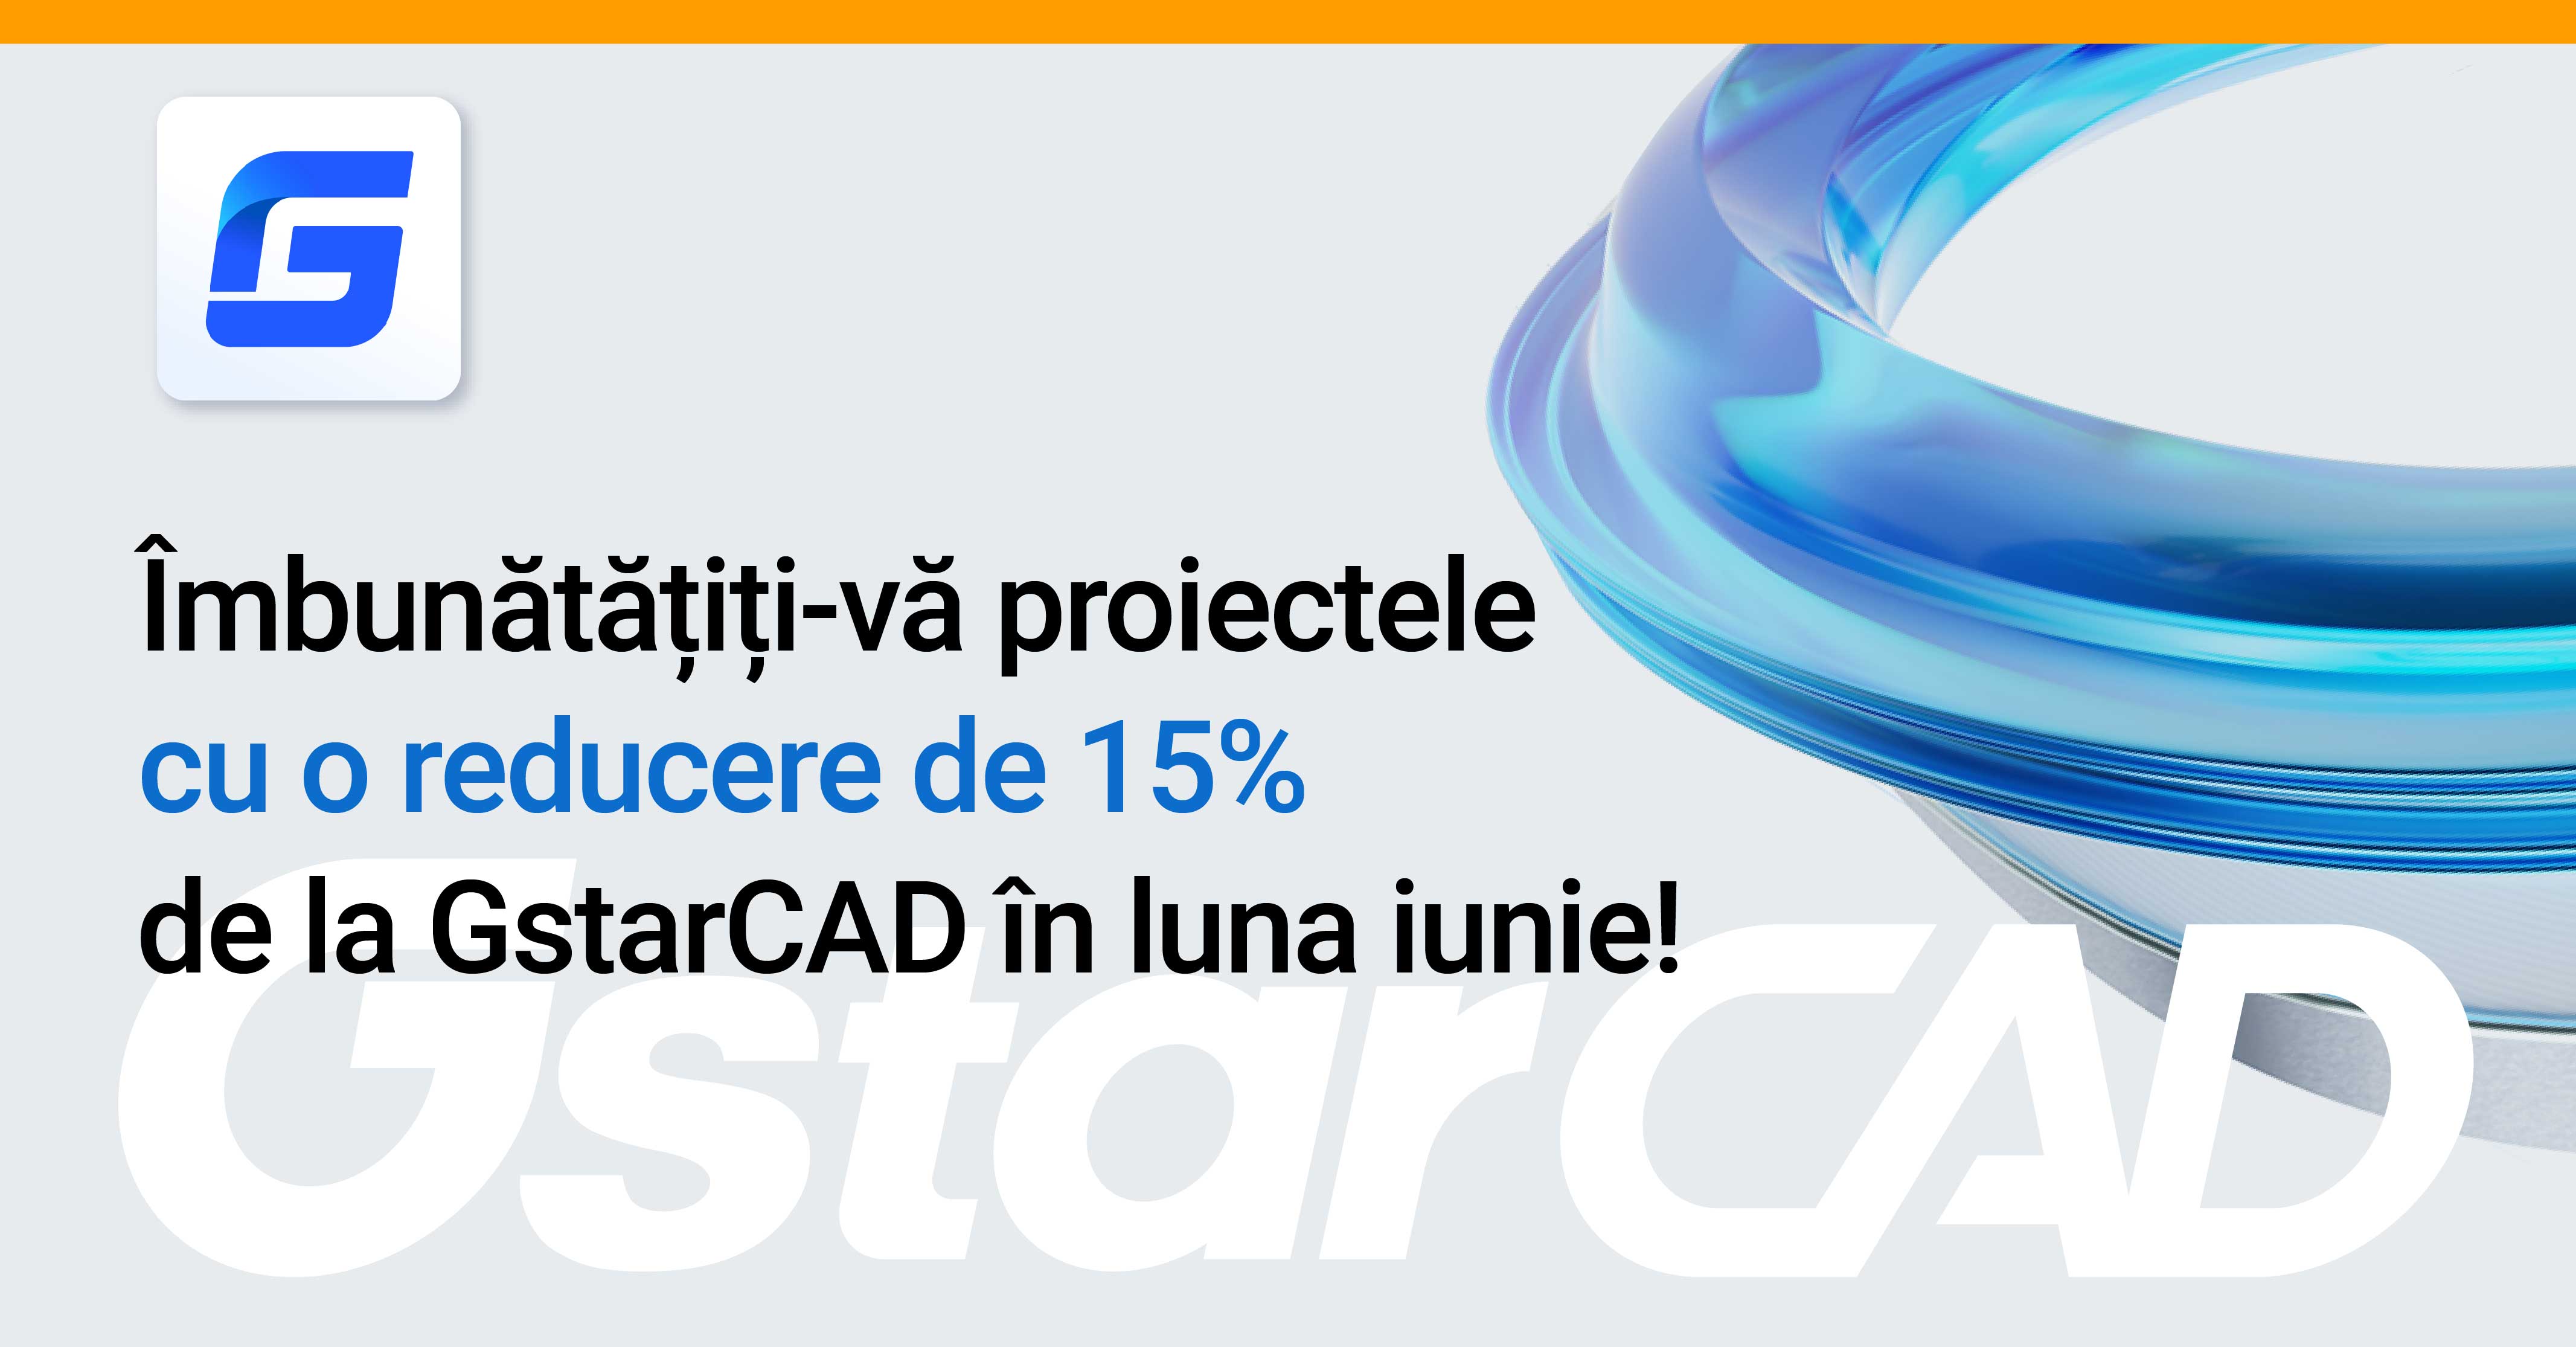 Îmbunătățiți-vă proiectele cu o reducere de 15% de la GstarCAD în luna iunie!